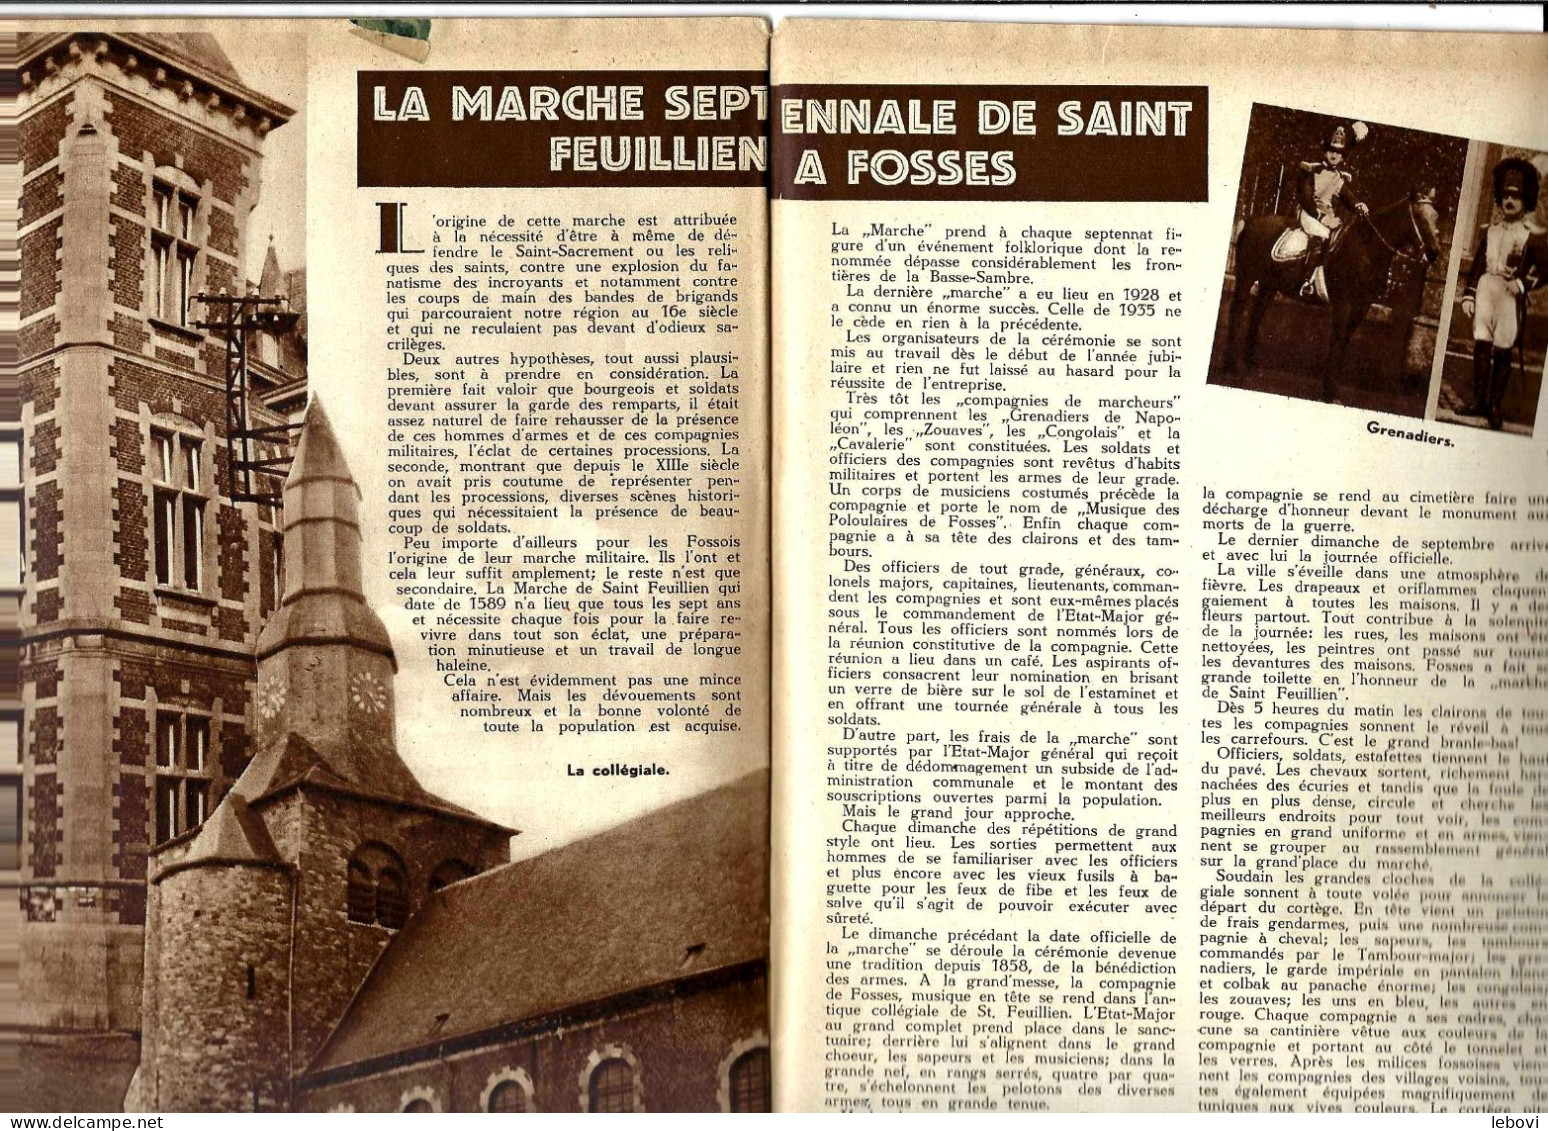 «La Marche Septennale De Saint Feuillien à FOSSES» Article De 2 Pages (7 Photos) Dans « A-Z » Hebdomadaire Illustrée -> - Belgium